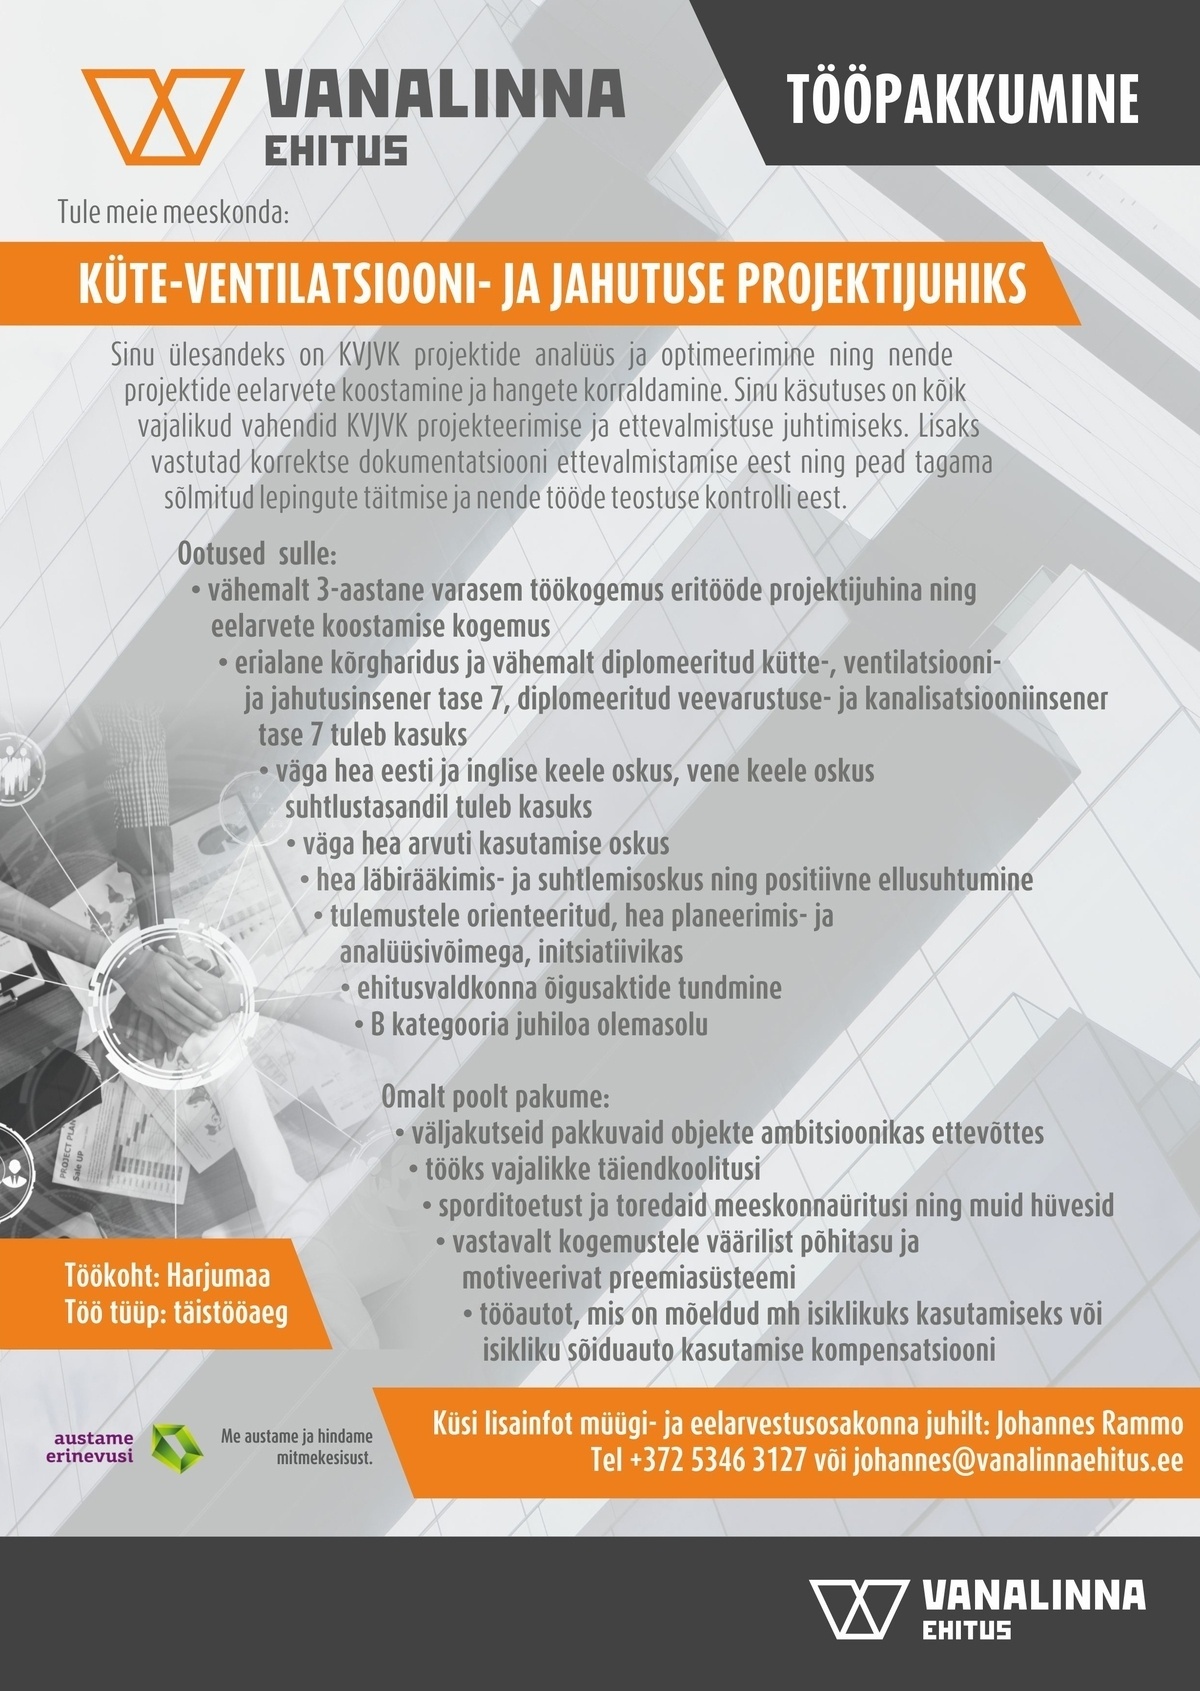 VANALINNA EHITUS OÜ Küte-ventilatsiooni- ja jahutuse projektijuht (KVJVK)